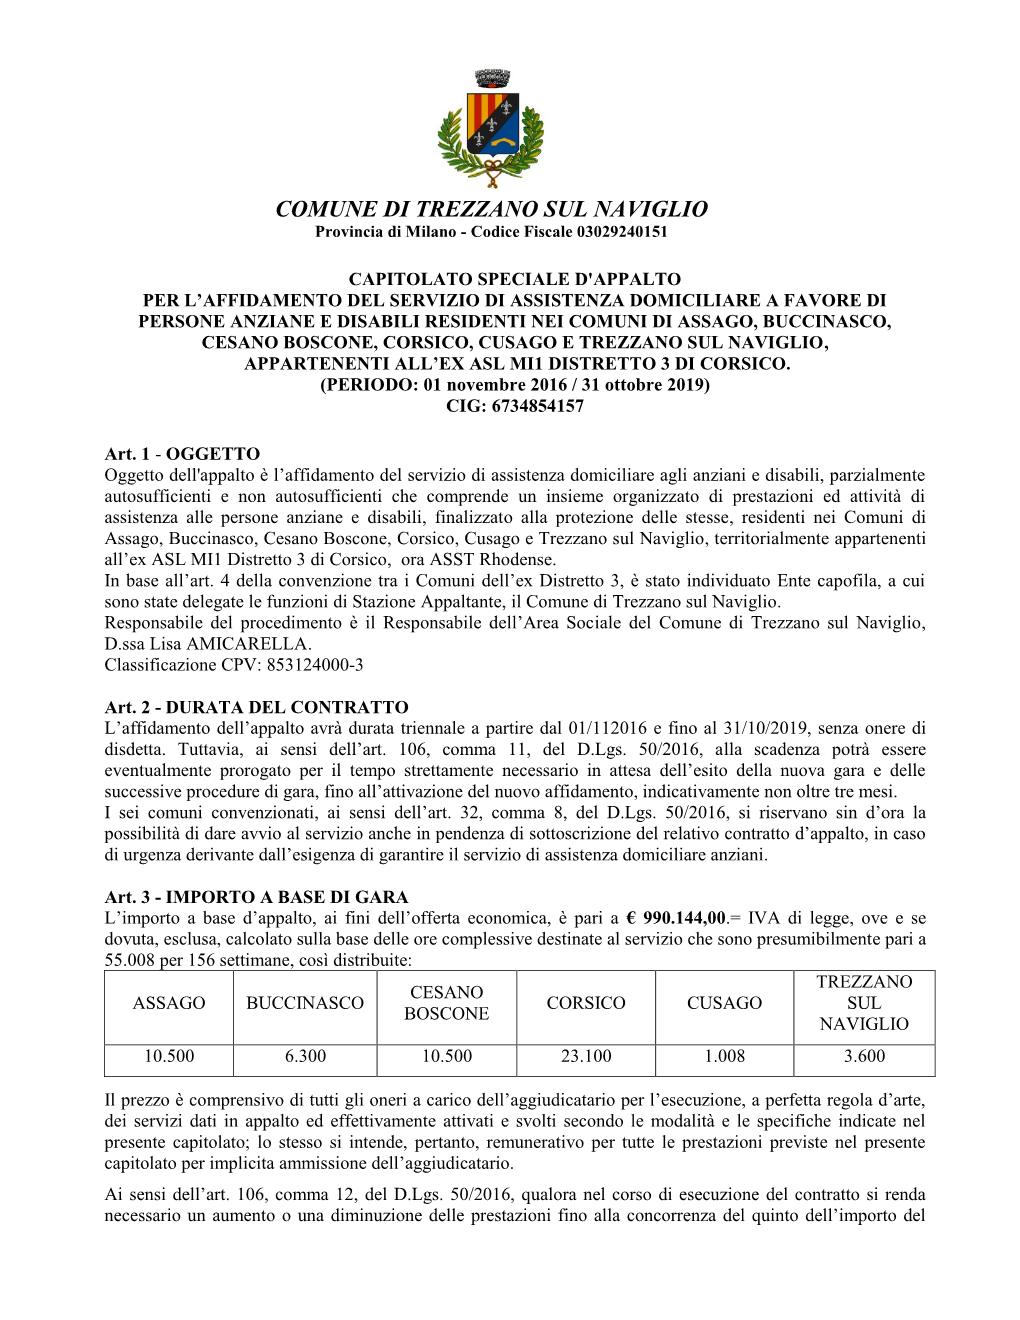 COMUNE DI TREZZANO SUL NAVIGLIO Provincia Di Milano - Codice Fiscale 03029240151